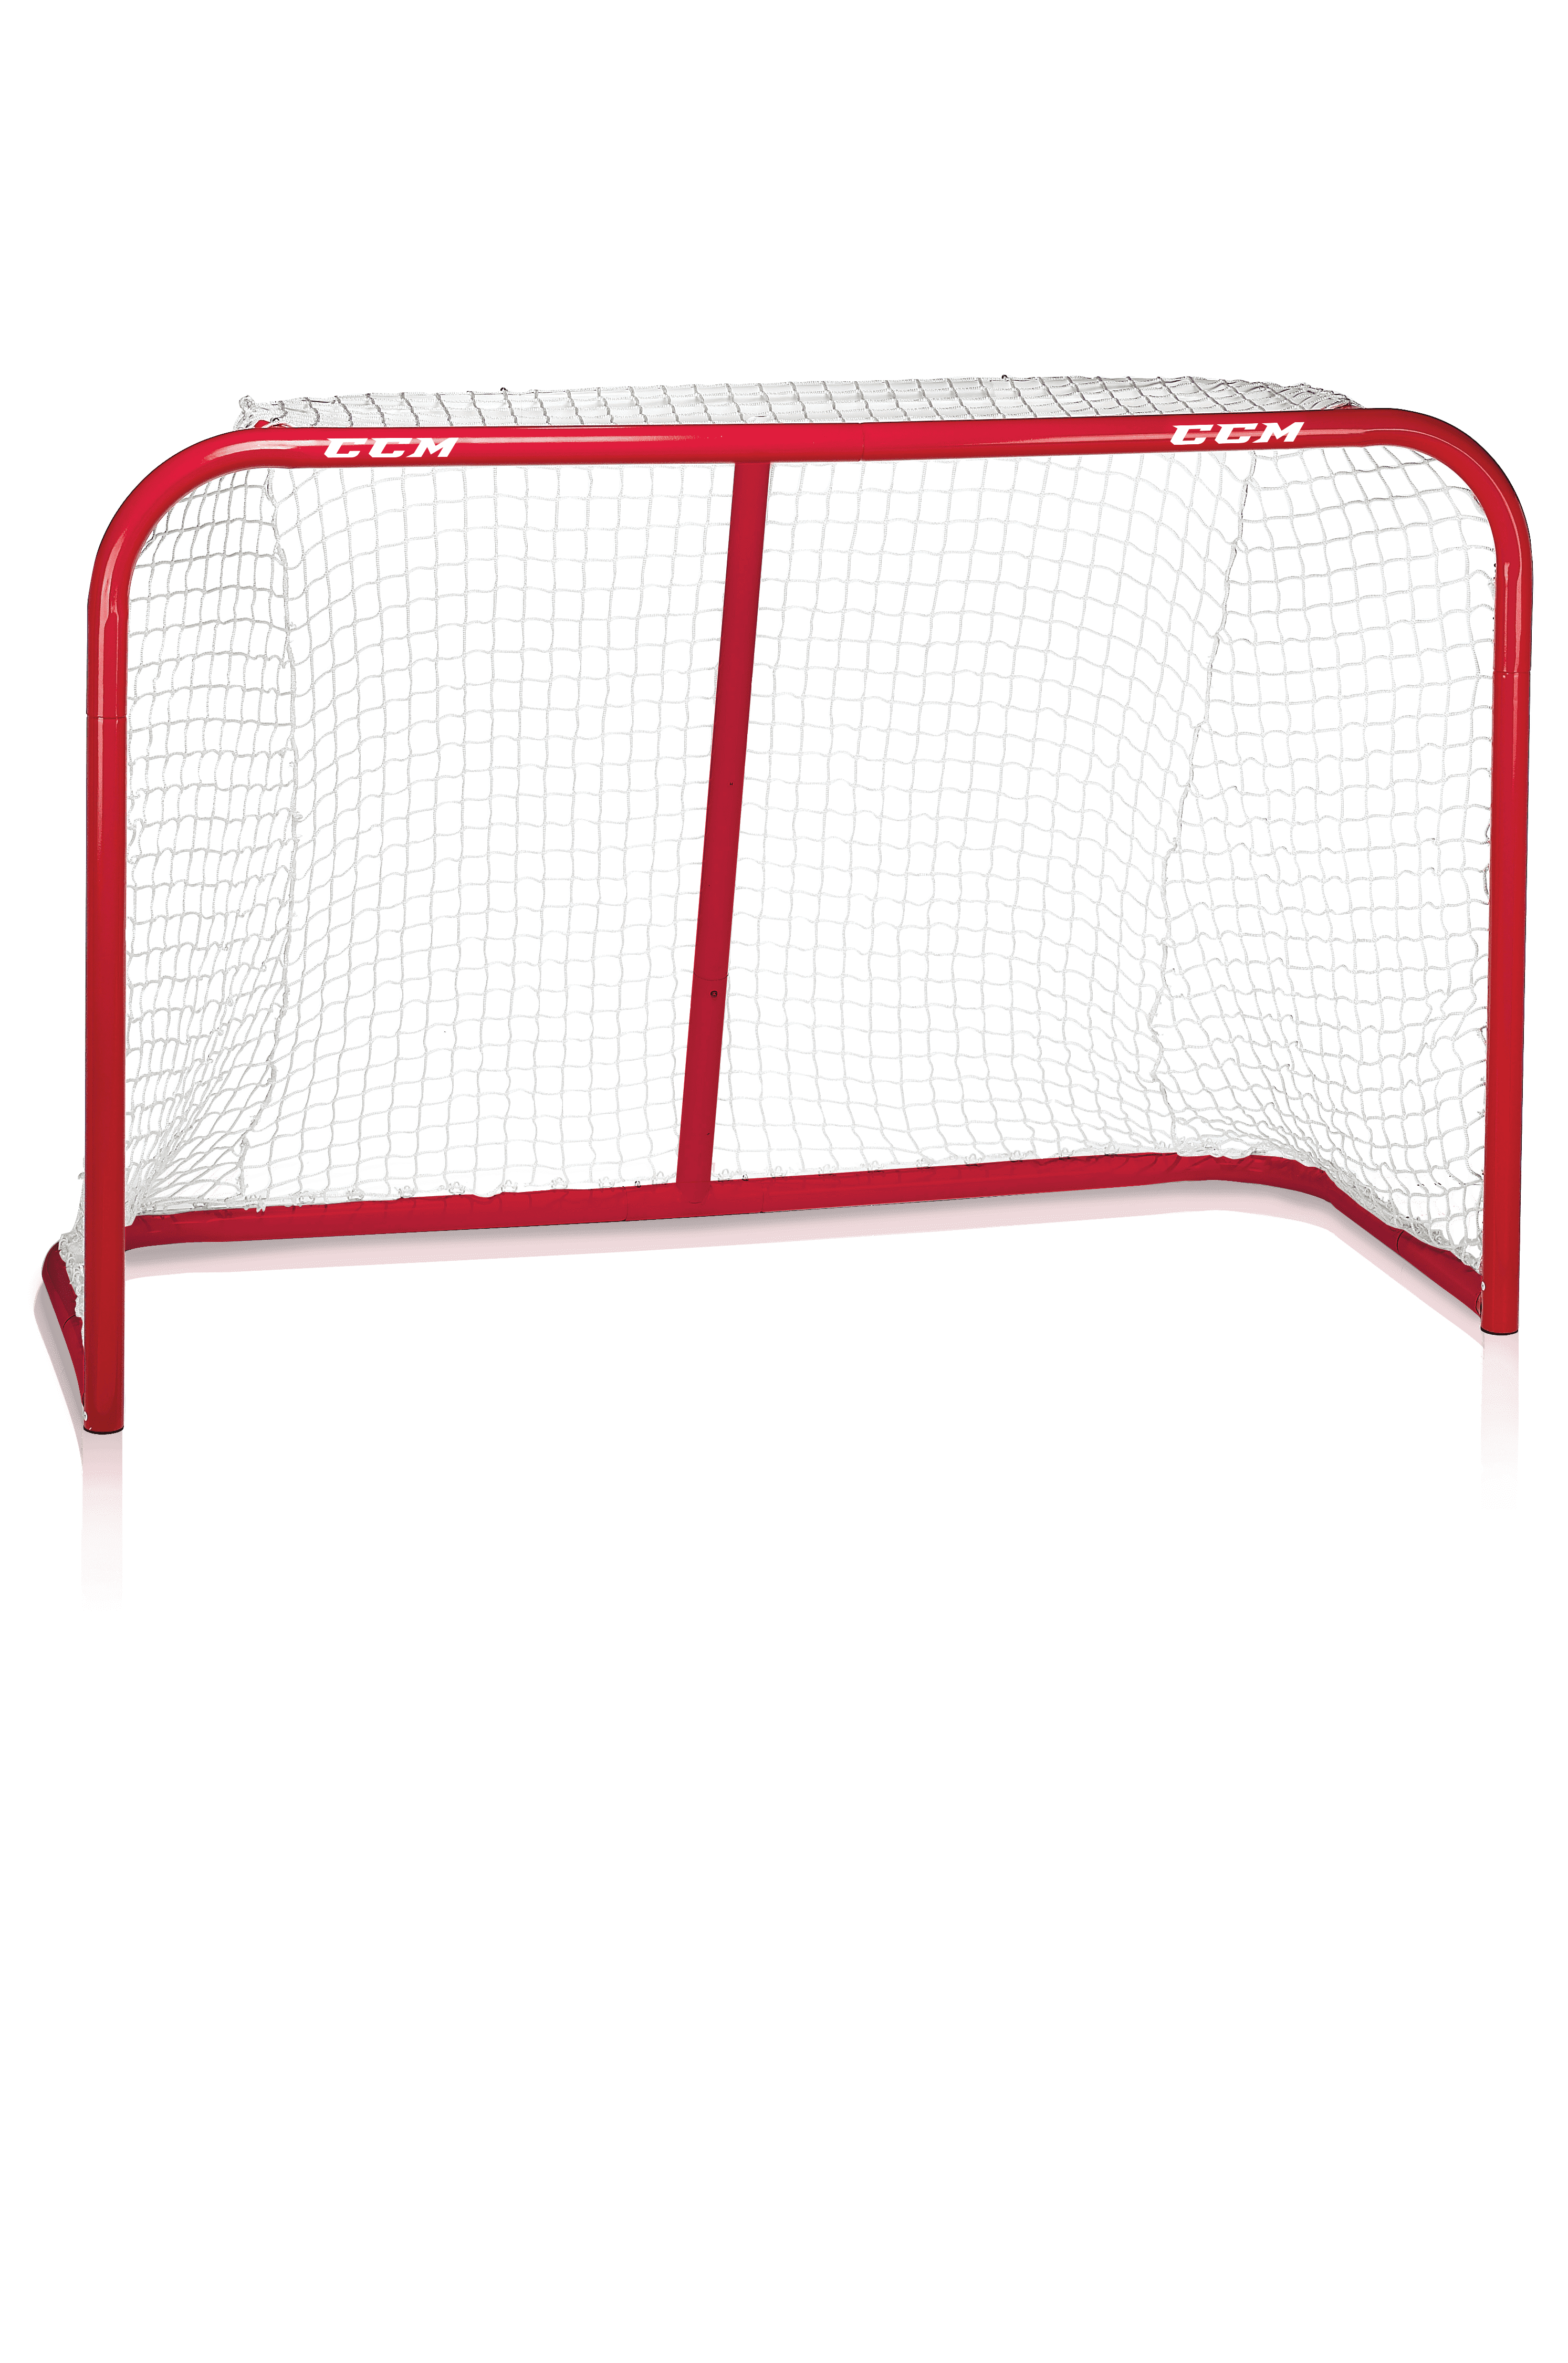 ACC Tor CCM Street Hockey Goal 72" 183 x 122 x 75 cm